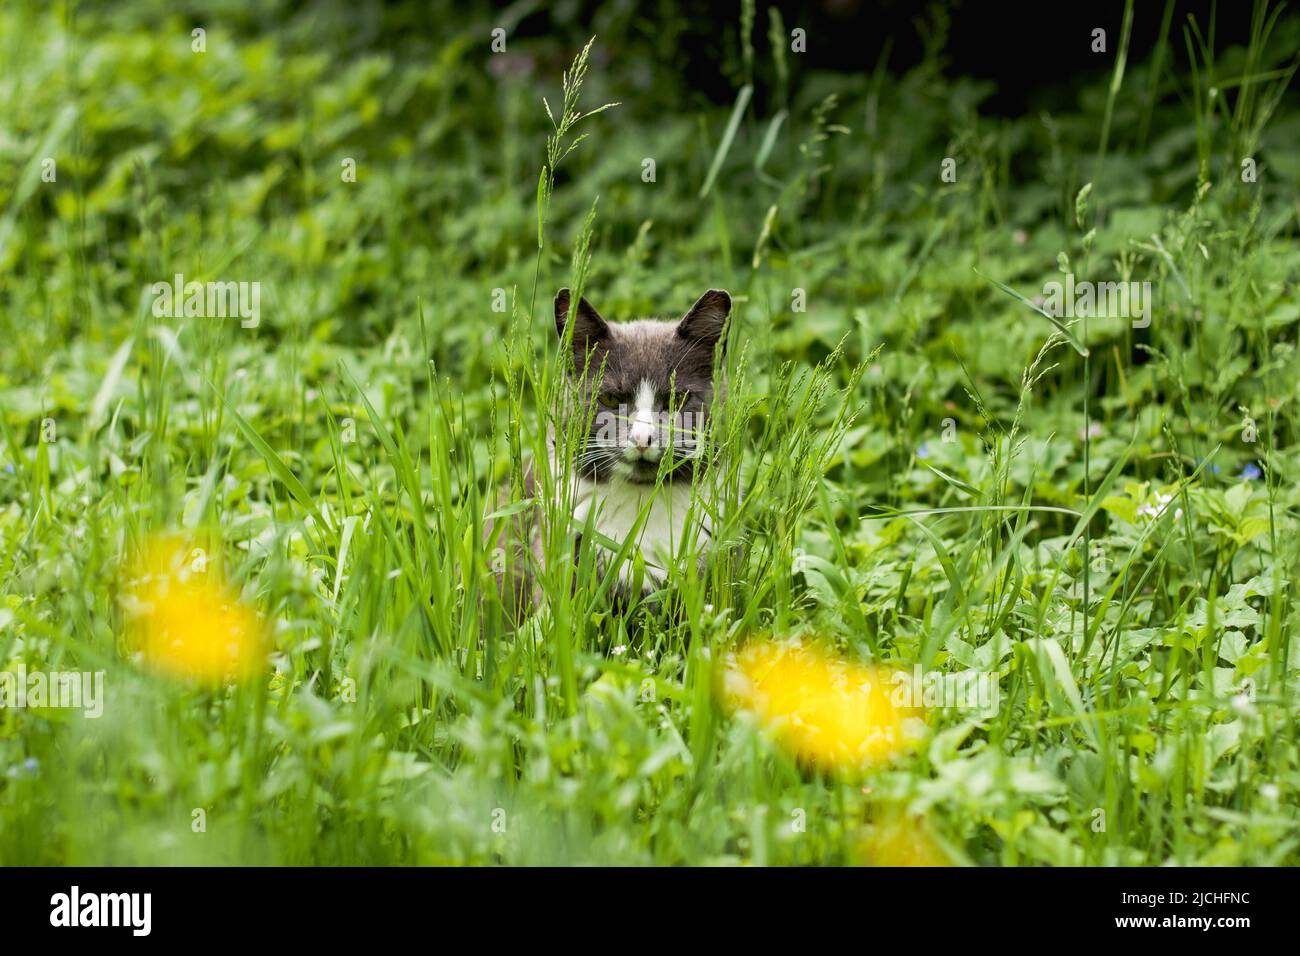 le chat gris avec un col blanc se trouve dans une grande herbe verte près des buissons rouges et regarde dans la cellule en se cachant. Chasse à la souris pour chats. Banque D'Images